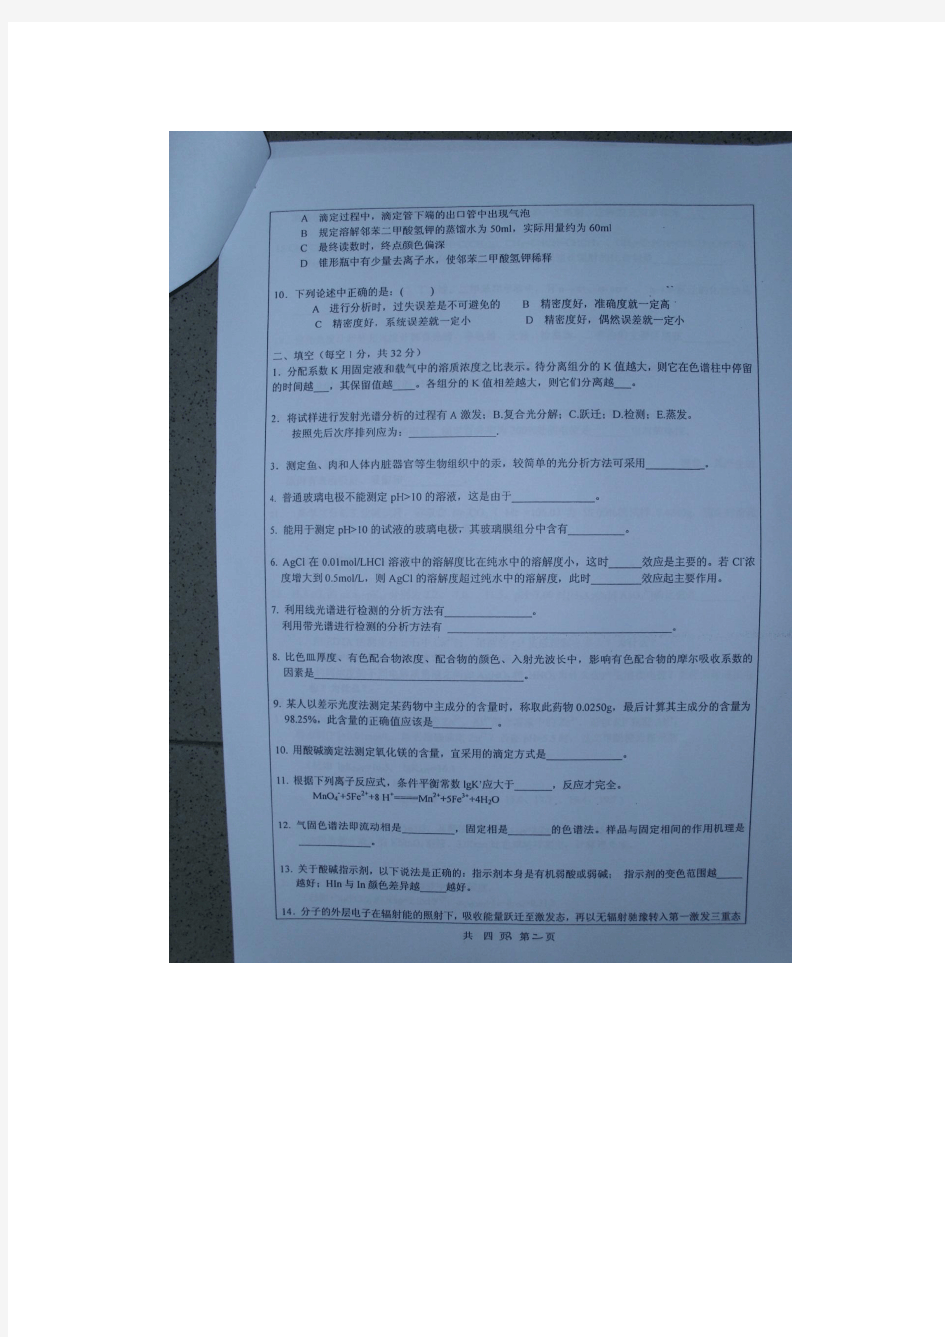 湖南大学2011年硕士研究生_化学专业_分析化学科目考试